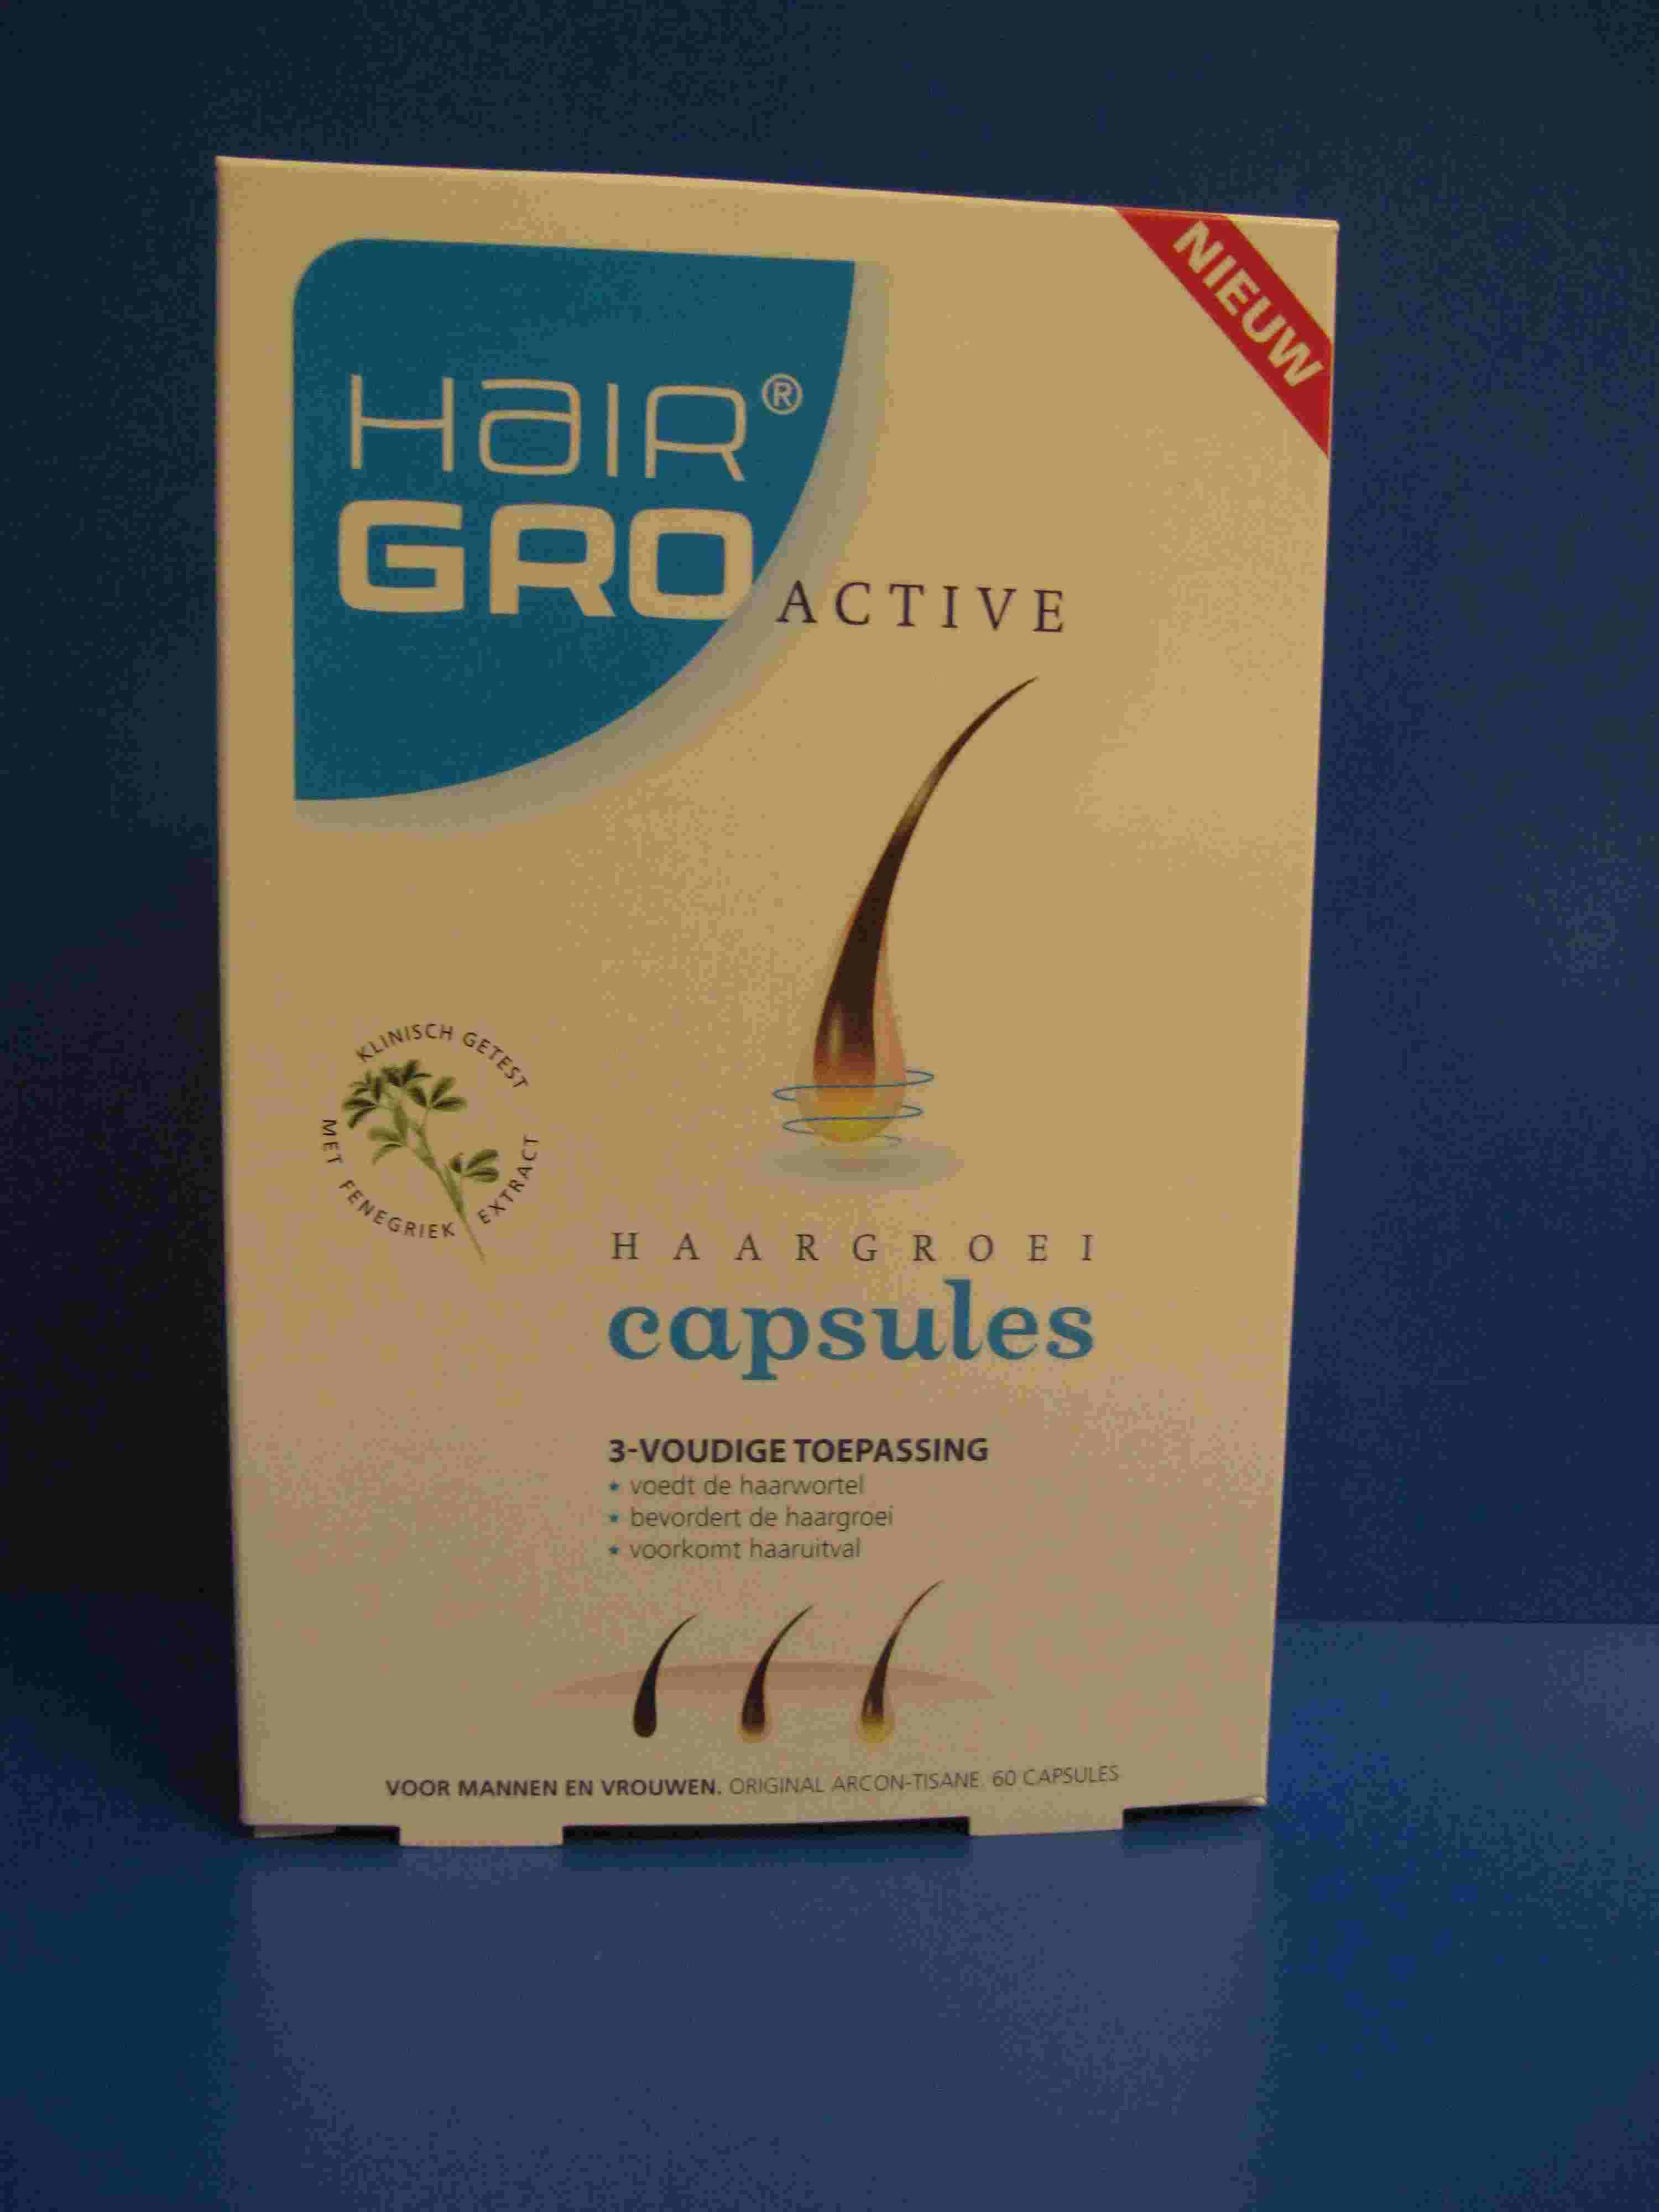 Hairgro Active capsules  verminderde hairgroei voorkomt haaruitval dun haar voedt haarwortel.jpg